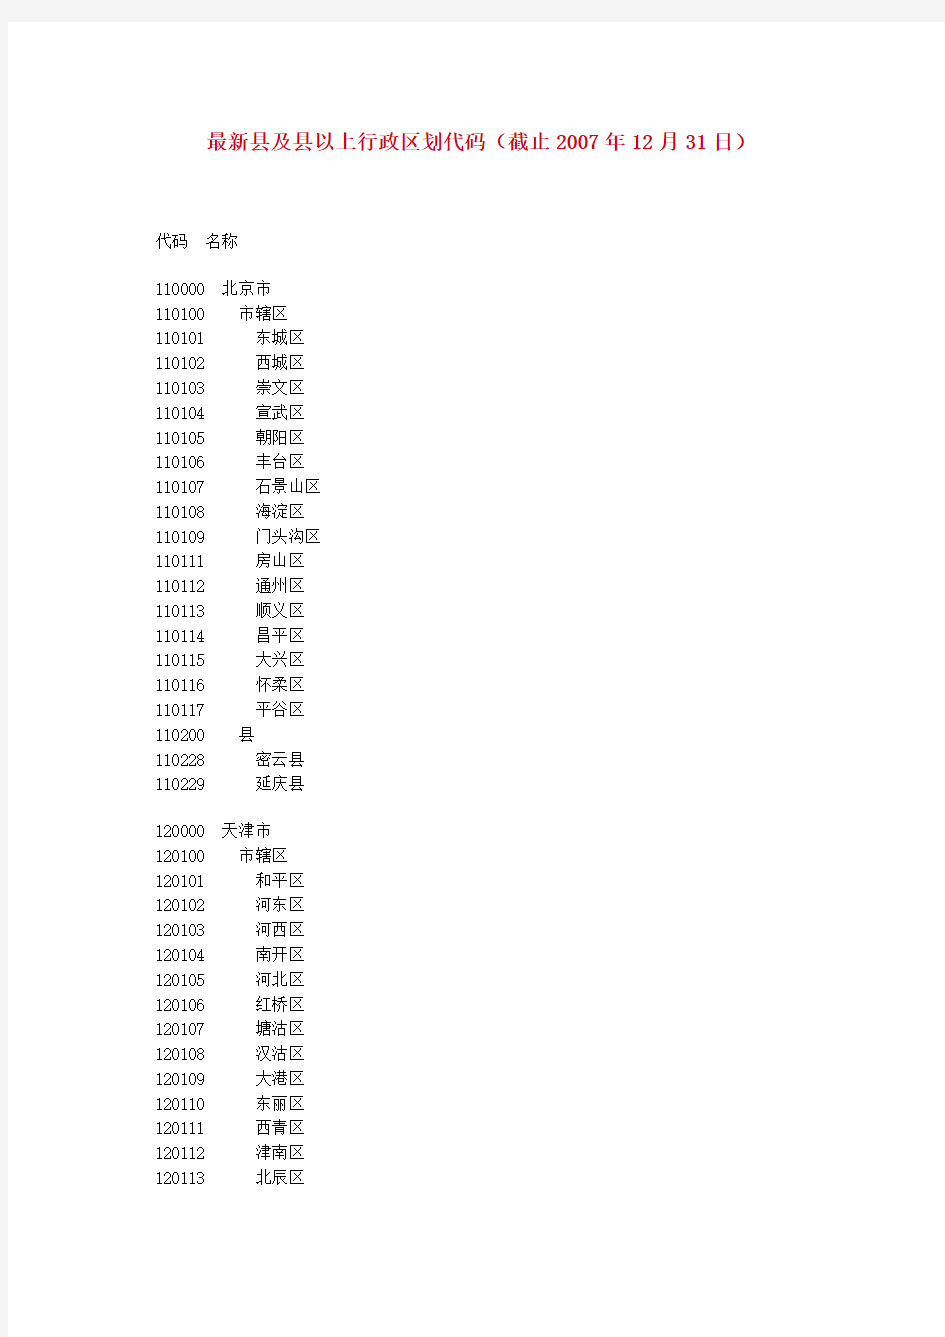 1.GBT2260-2007中华人民共和国行政区划代码